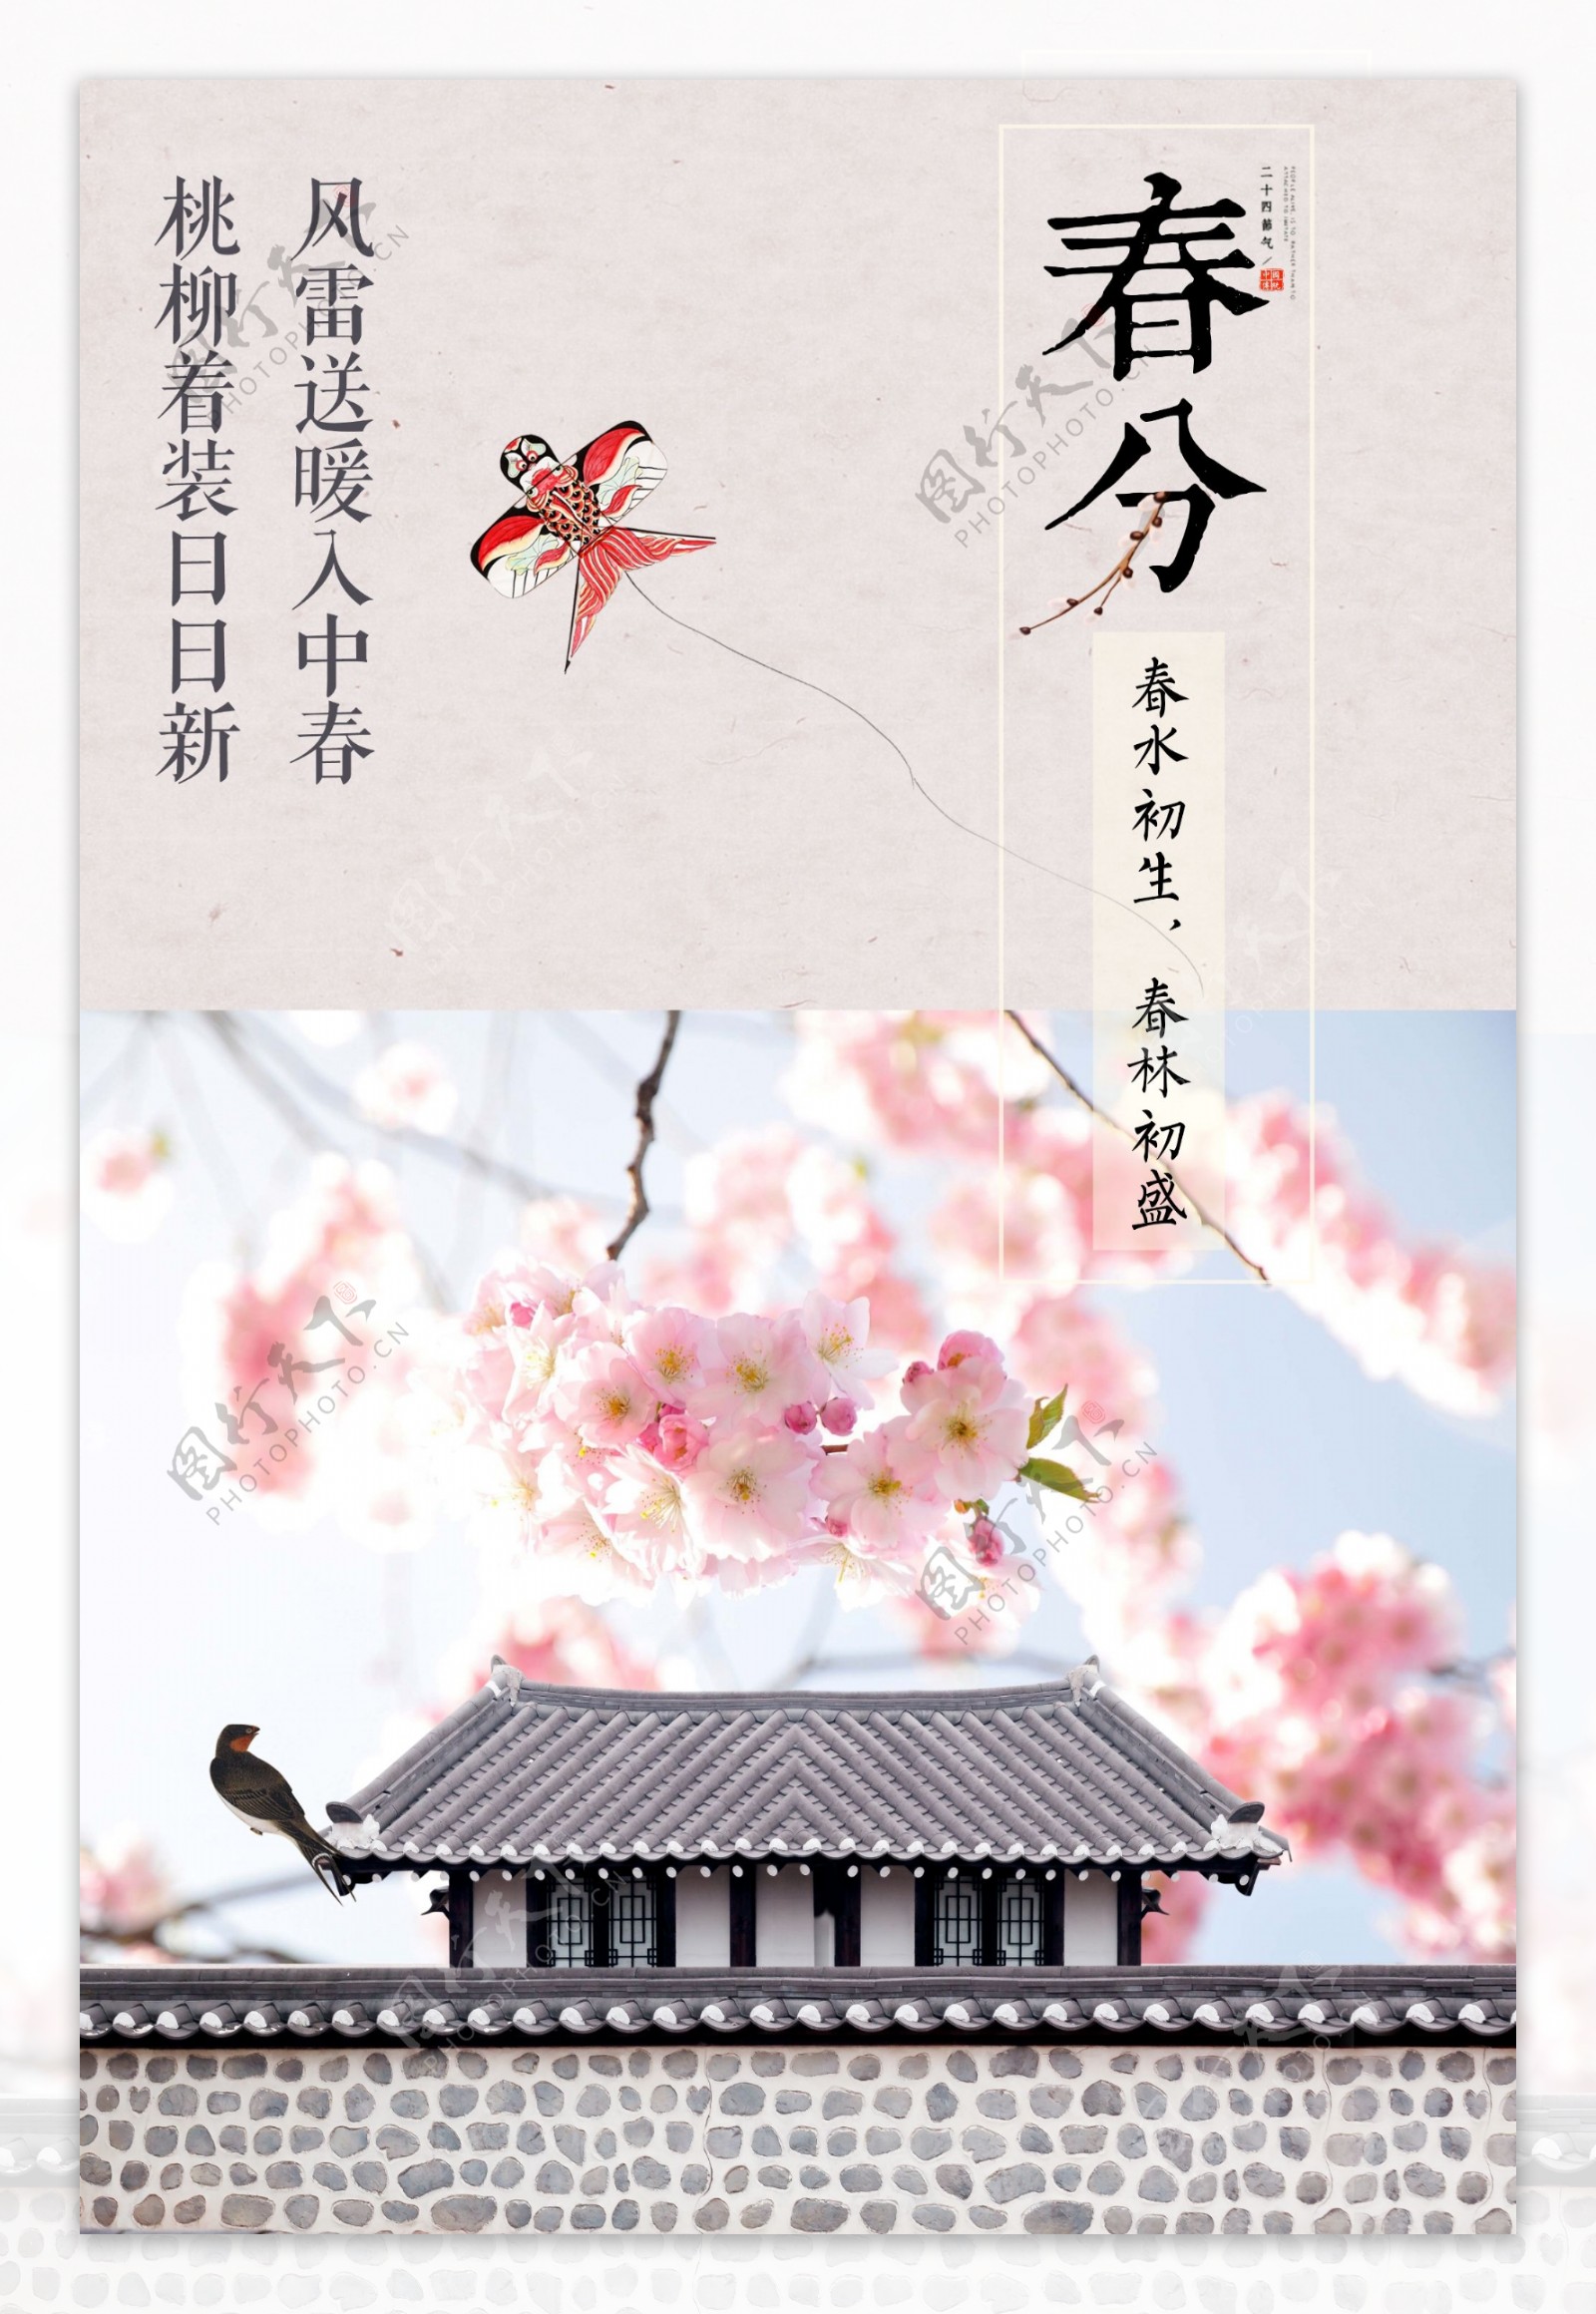 粉色二十四节气春分海报背景设计